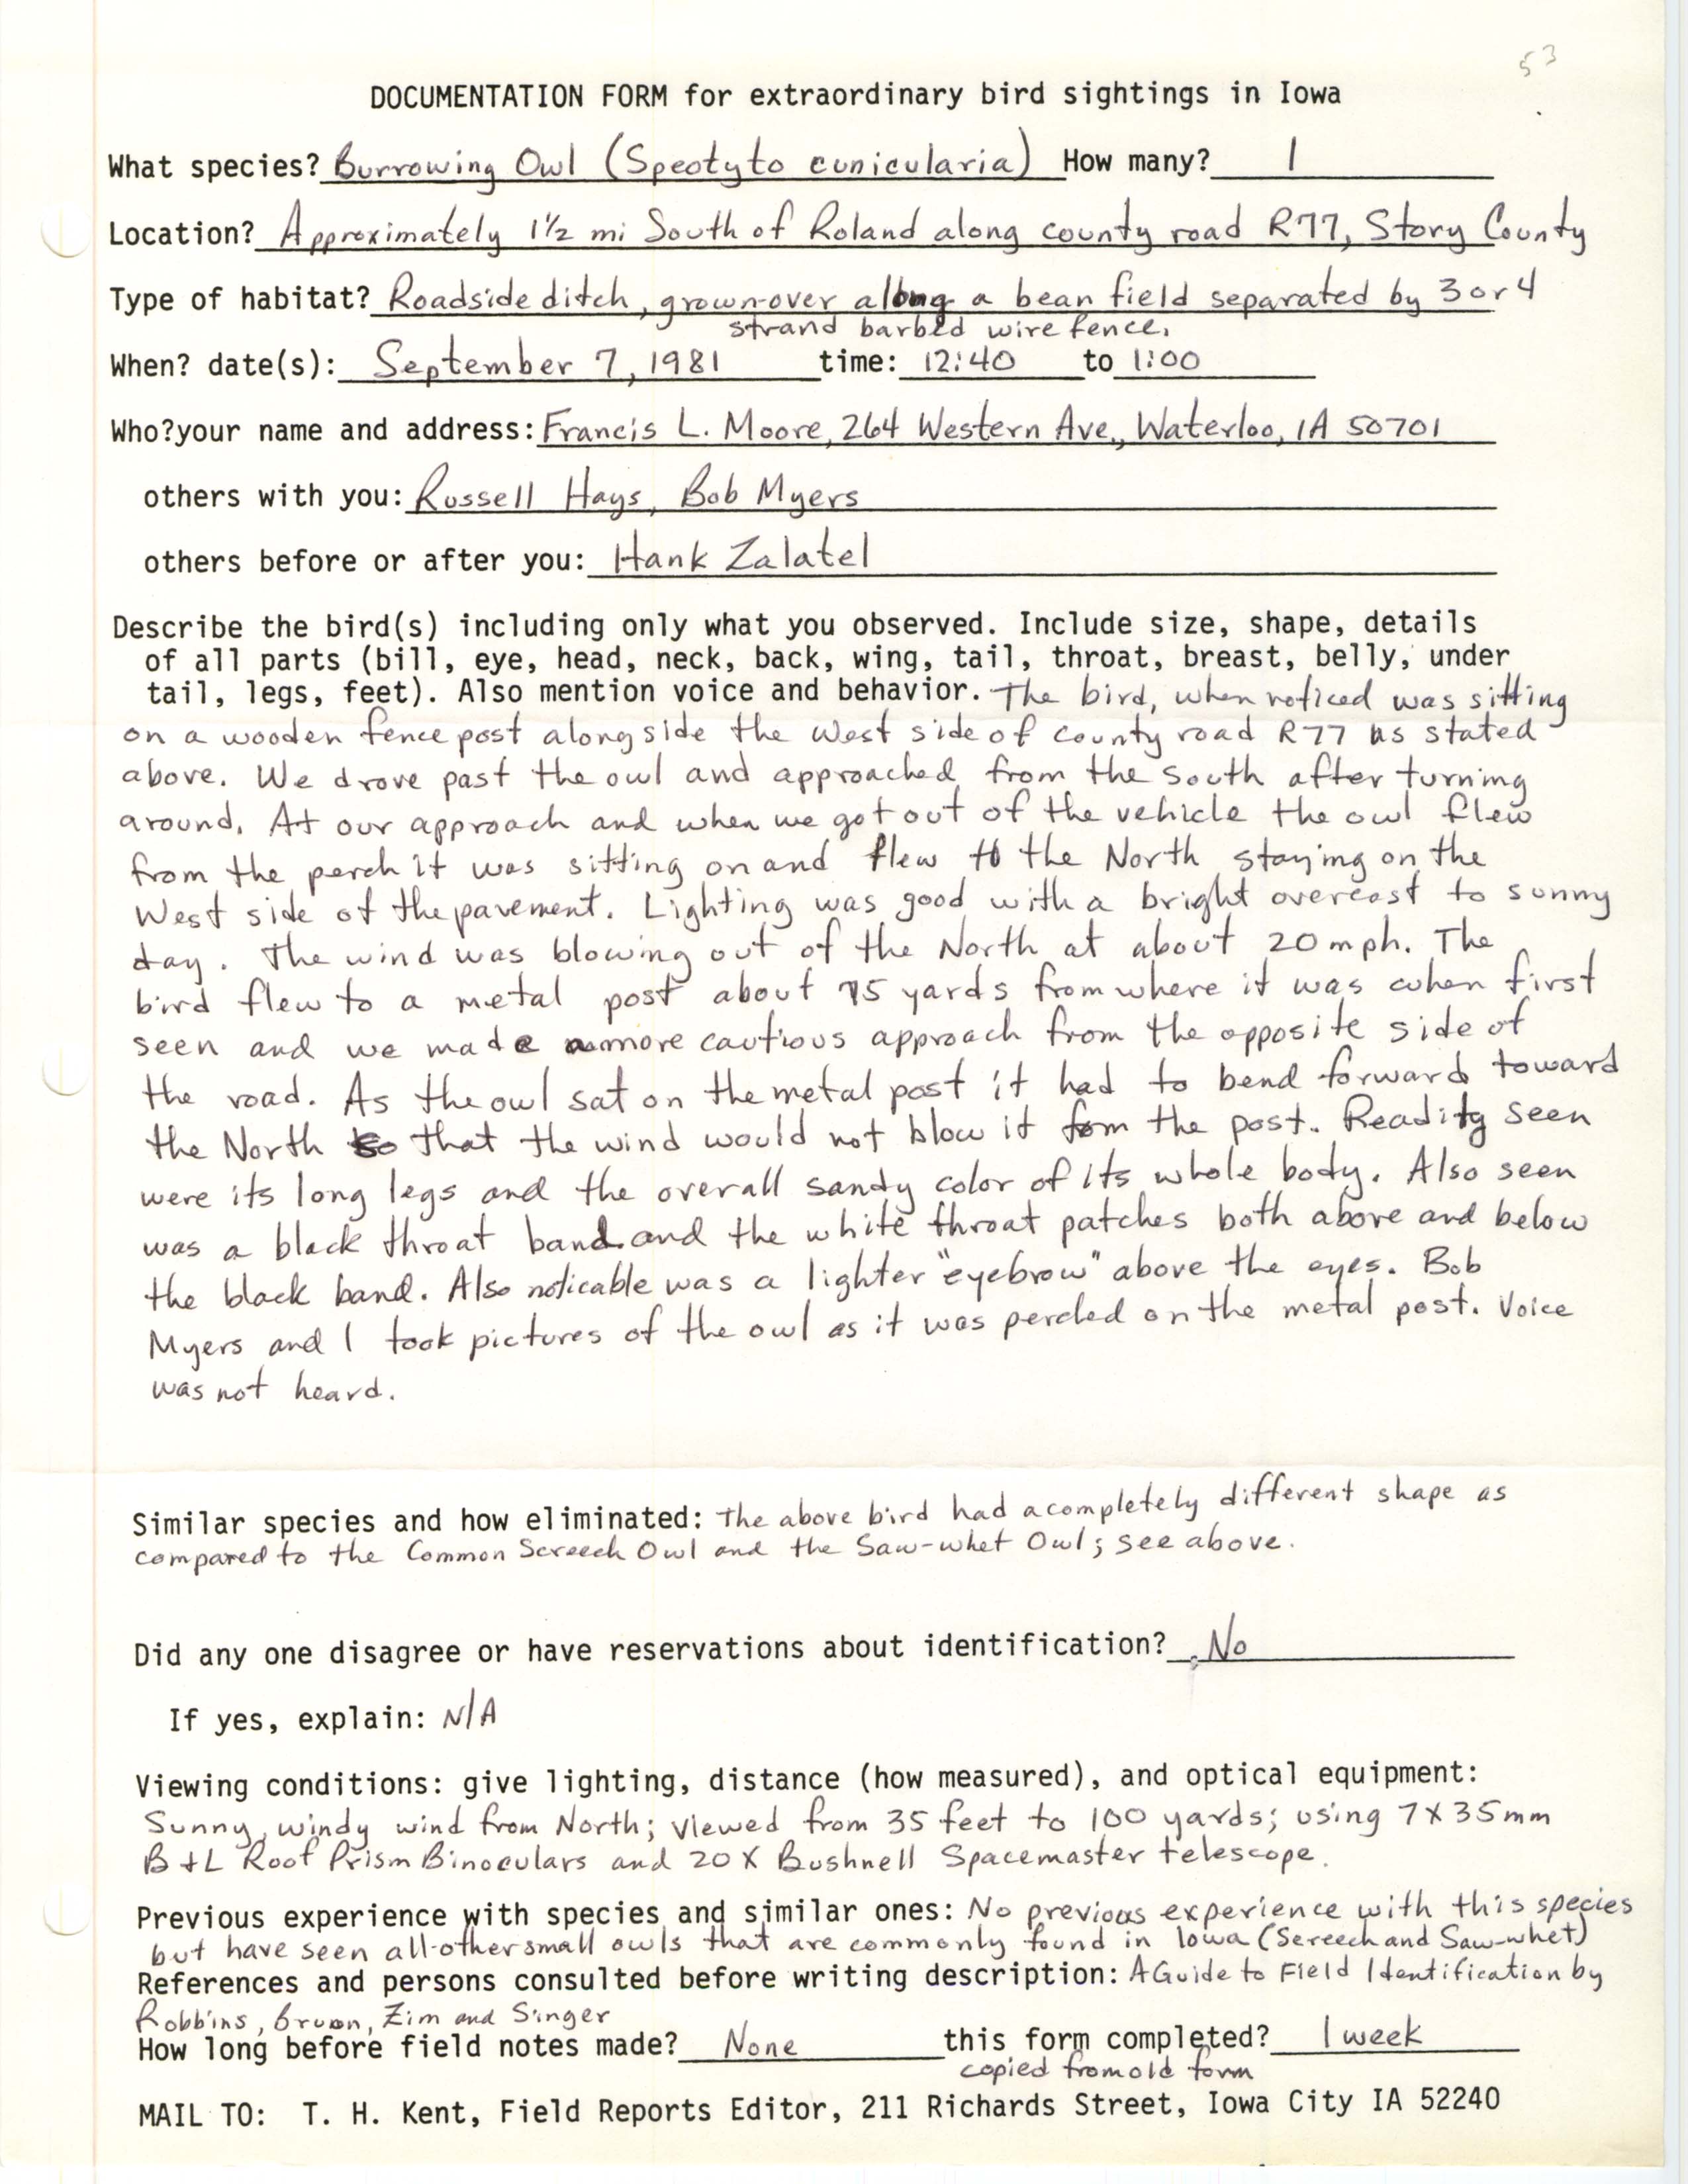 Rare bird documentation form for Burrowing Owl south of Roland, 1981